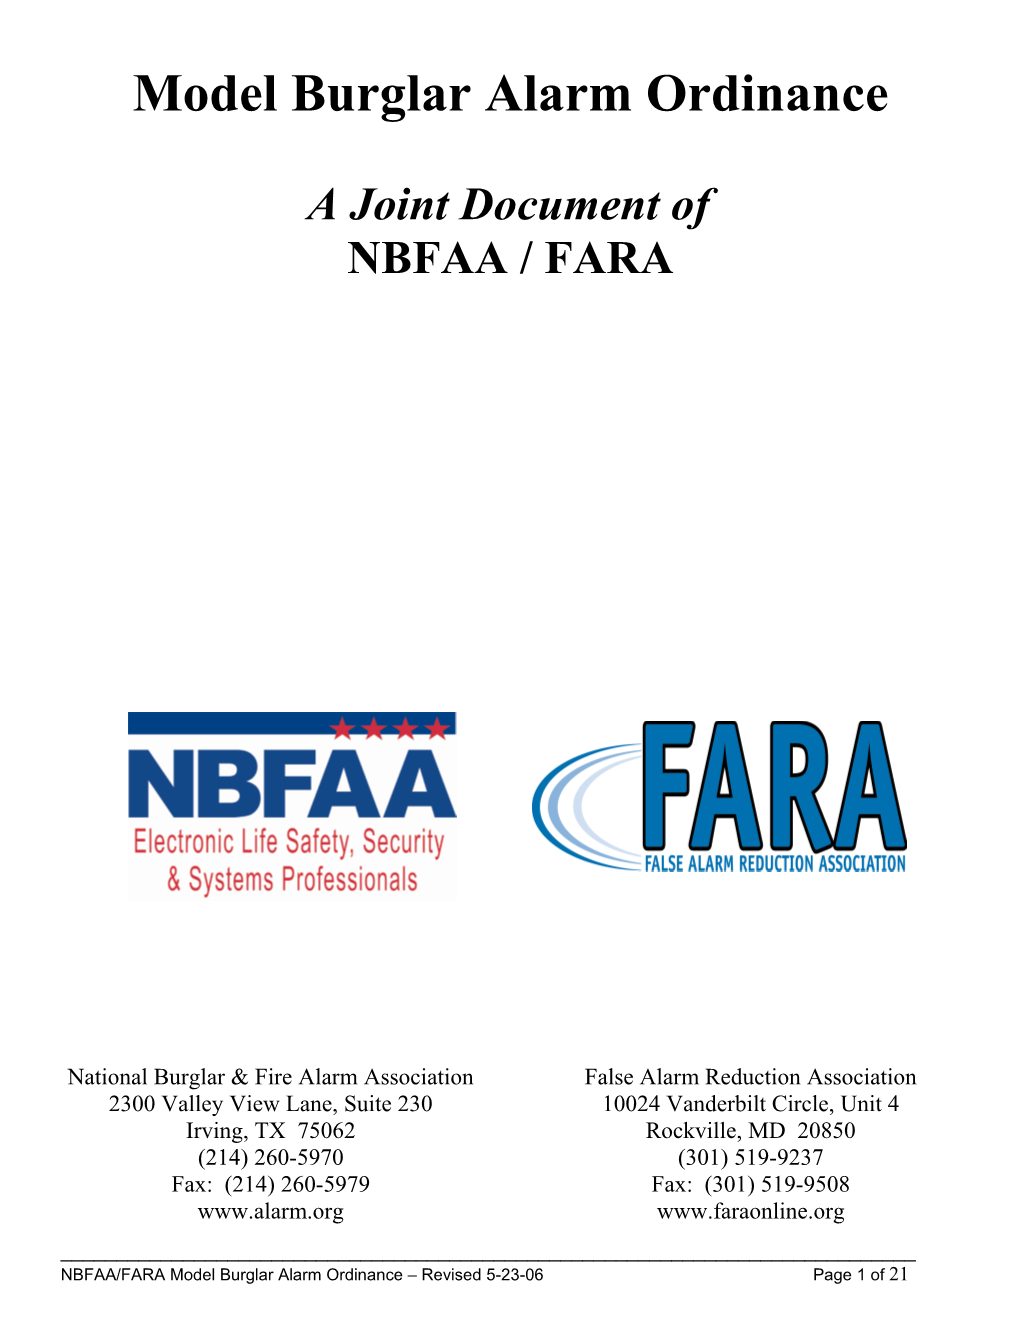 FARA/NBFAA Model Ordinance Governing Burglar Alarms